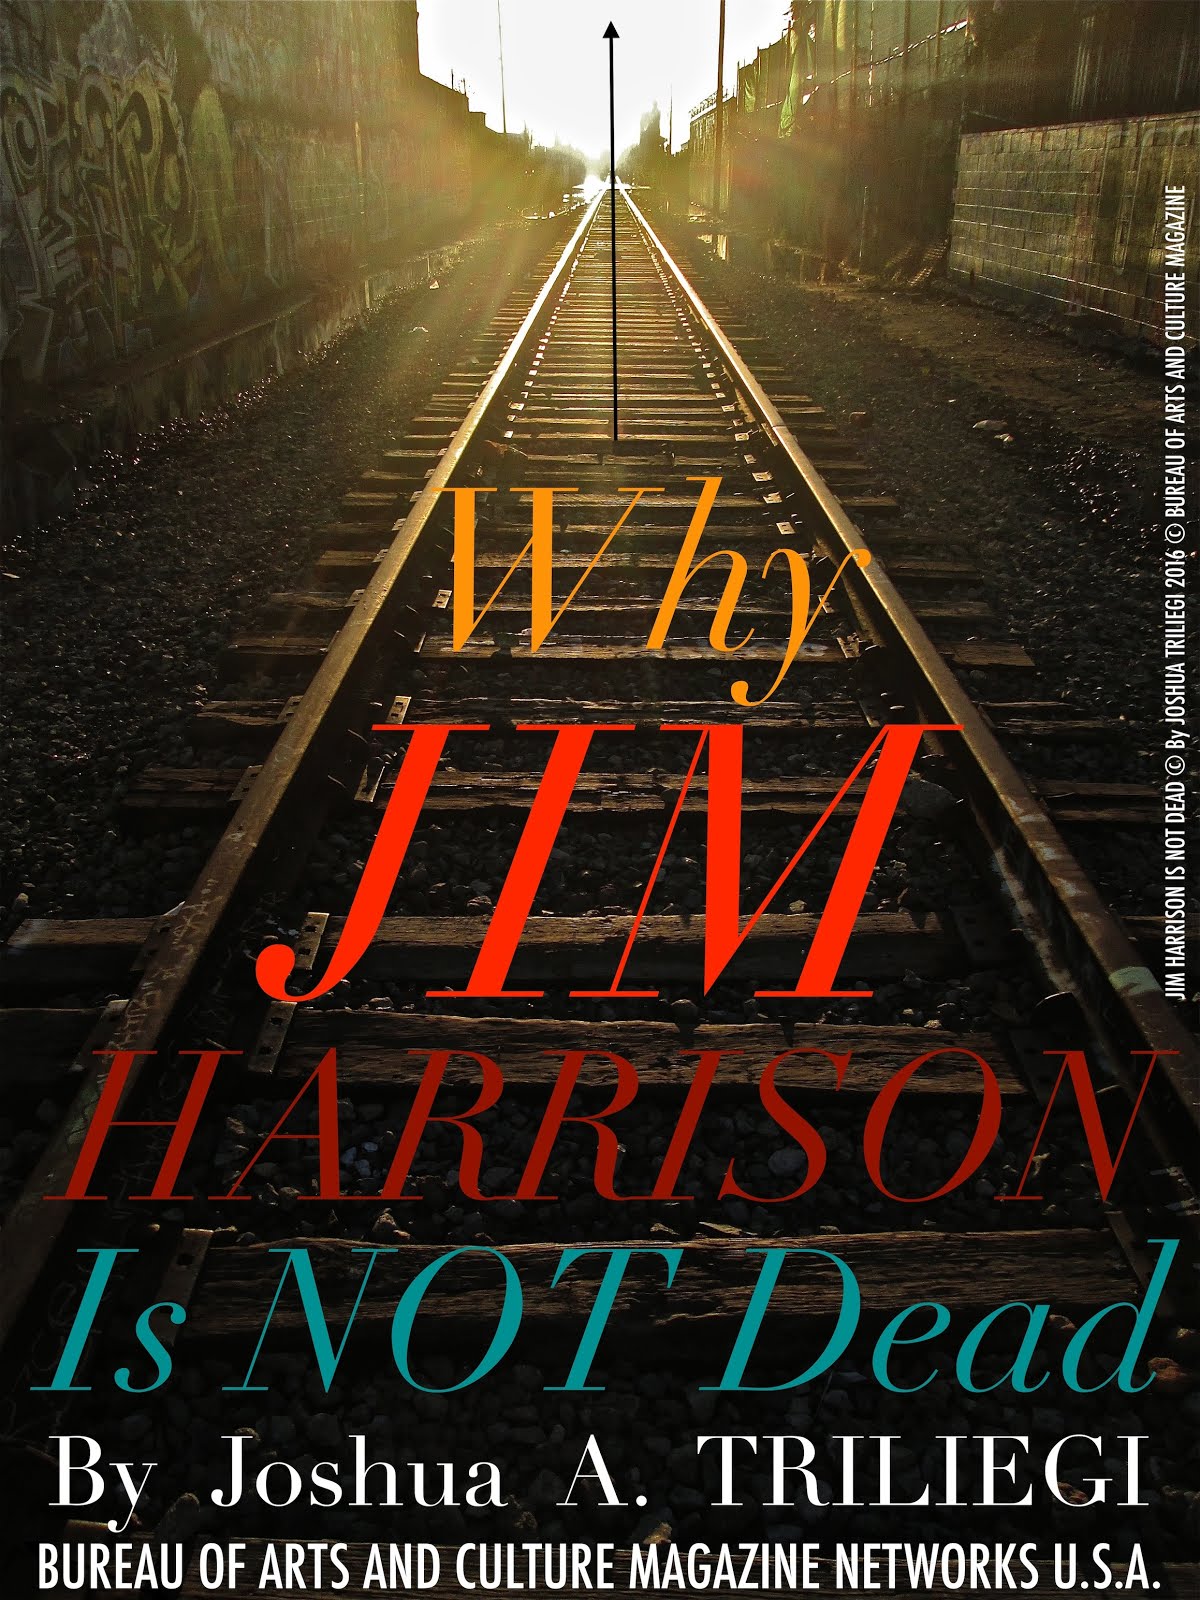 Why JIM HARRISON is Not DEAD